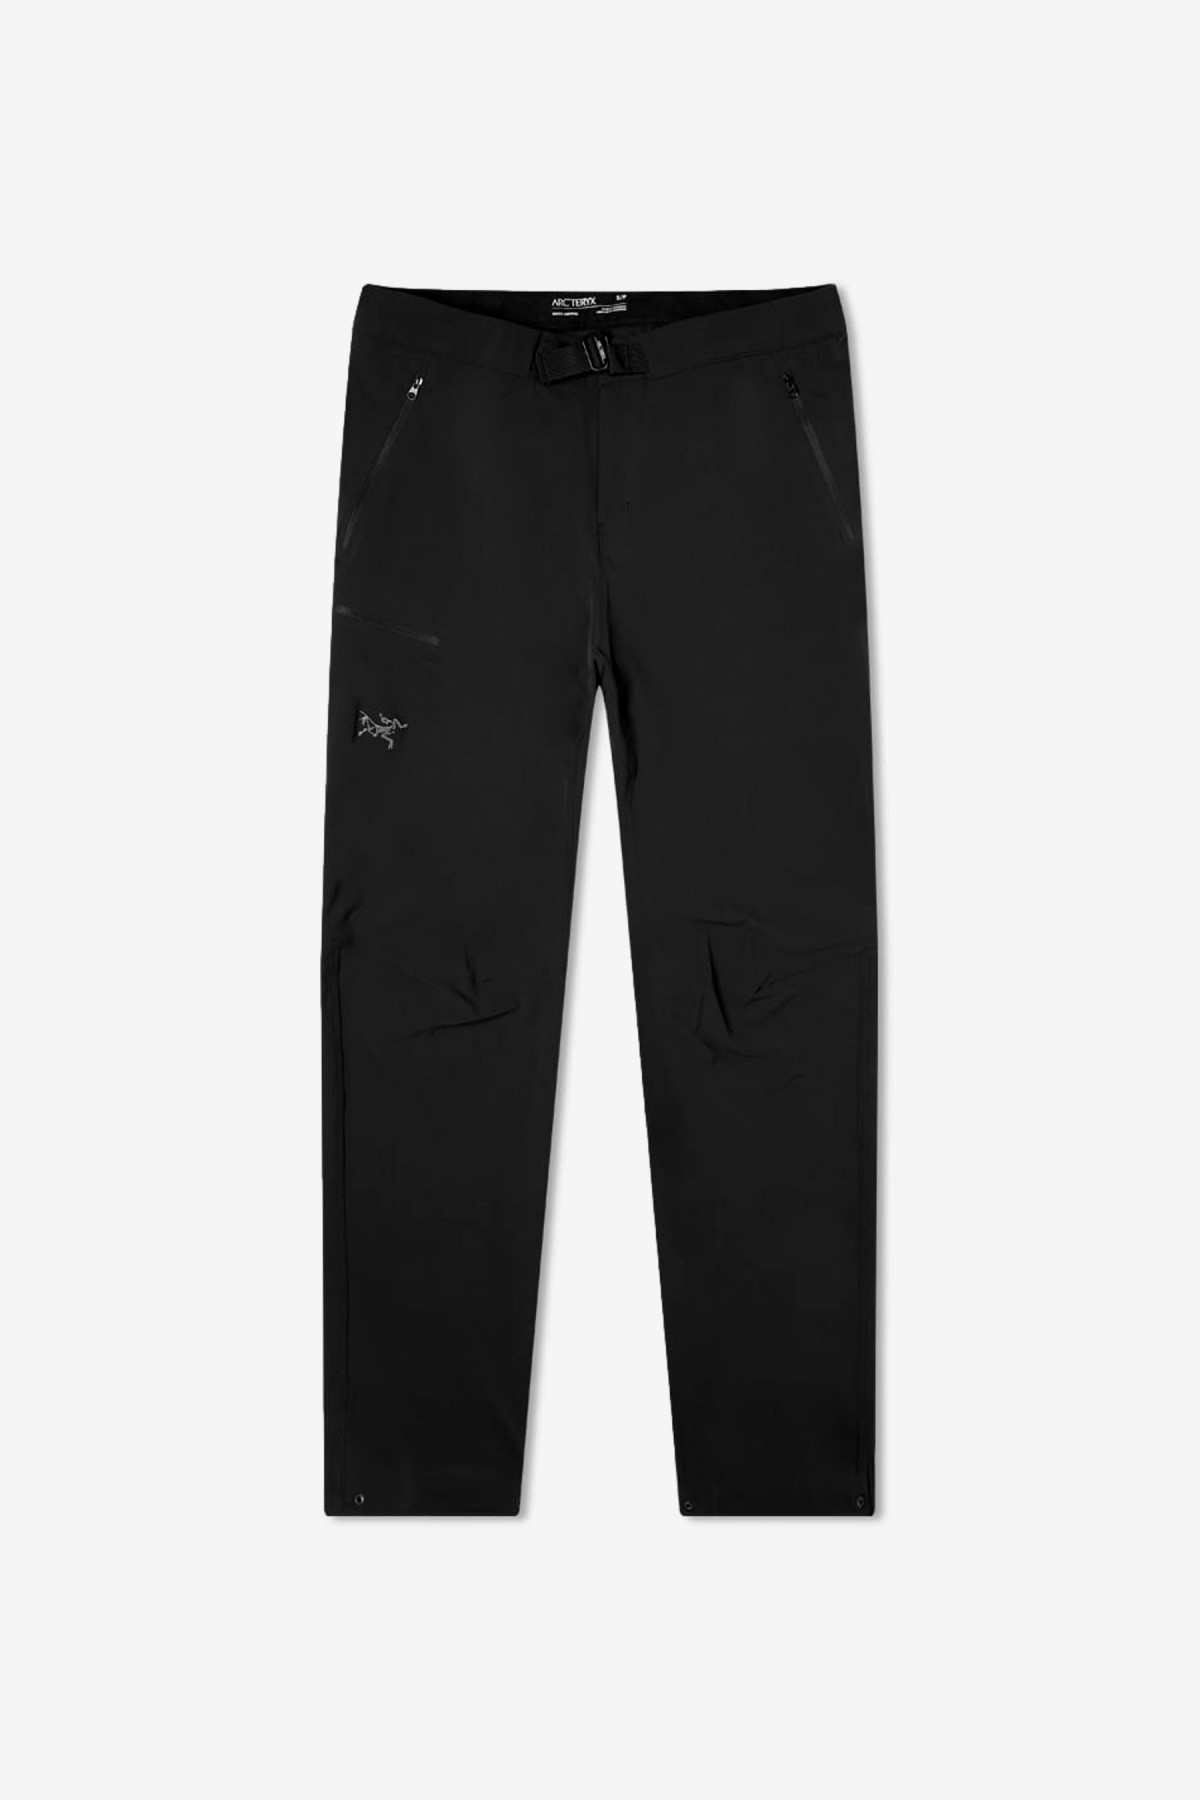 Arc’teryx Gamma LT Pants in Black